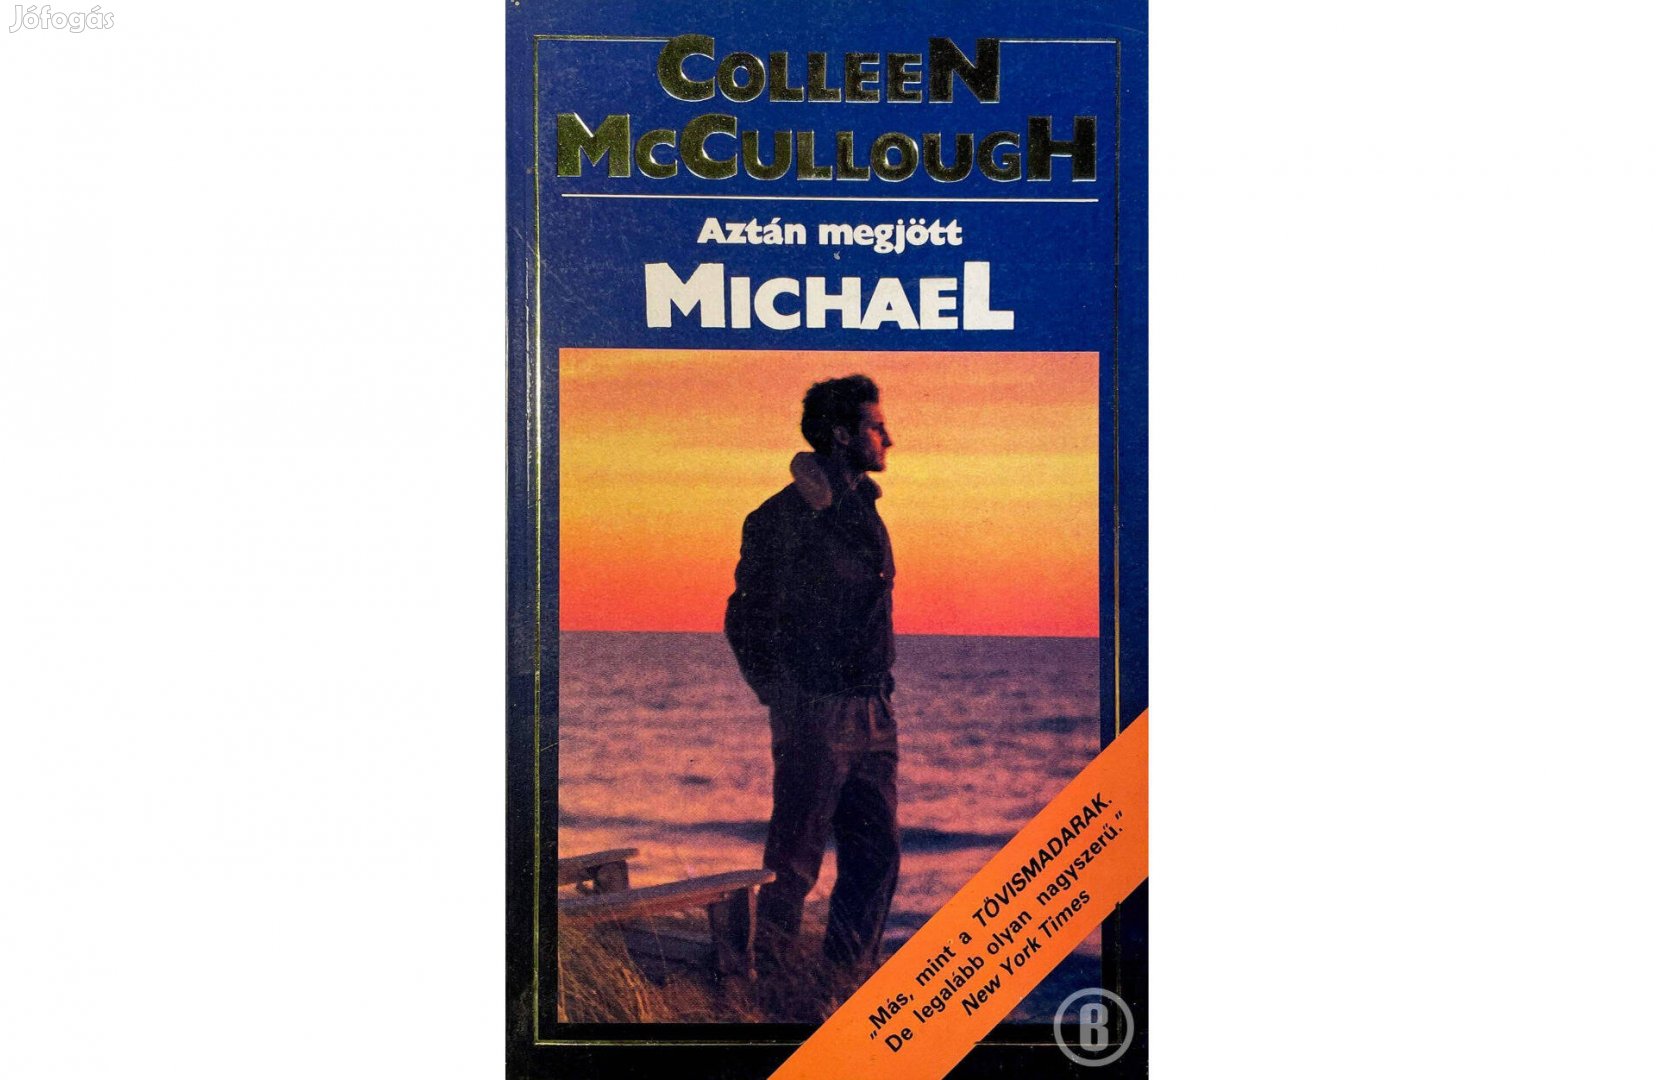 Colleen Mc Cullough: Aztán megjött Michael